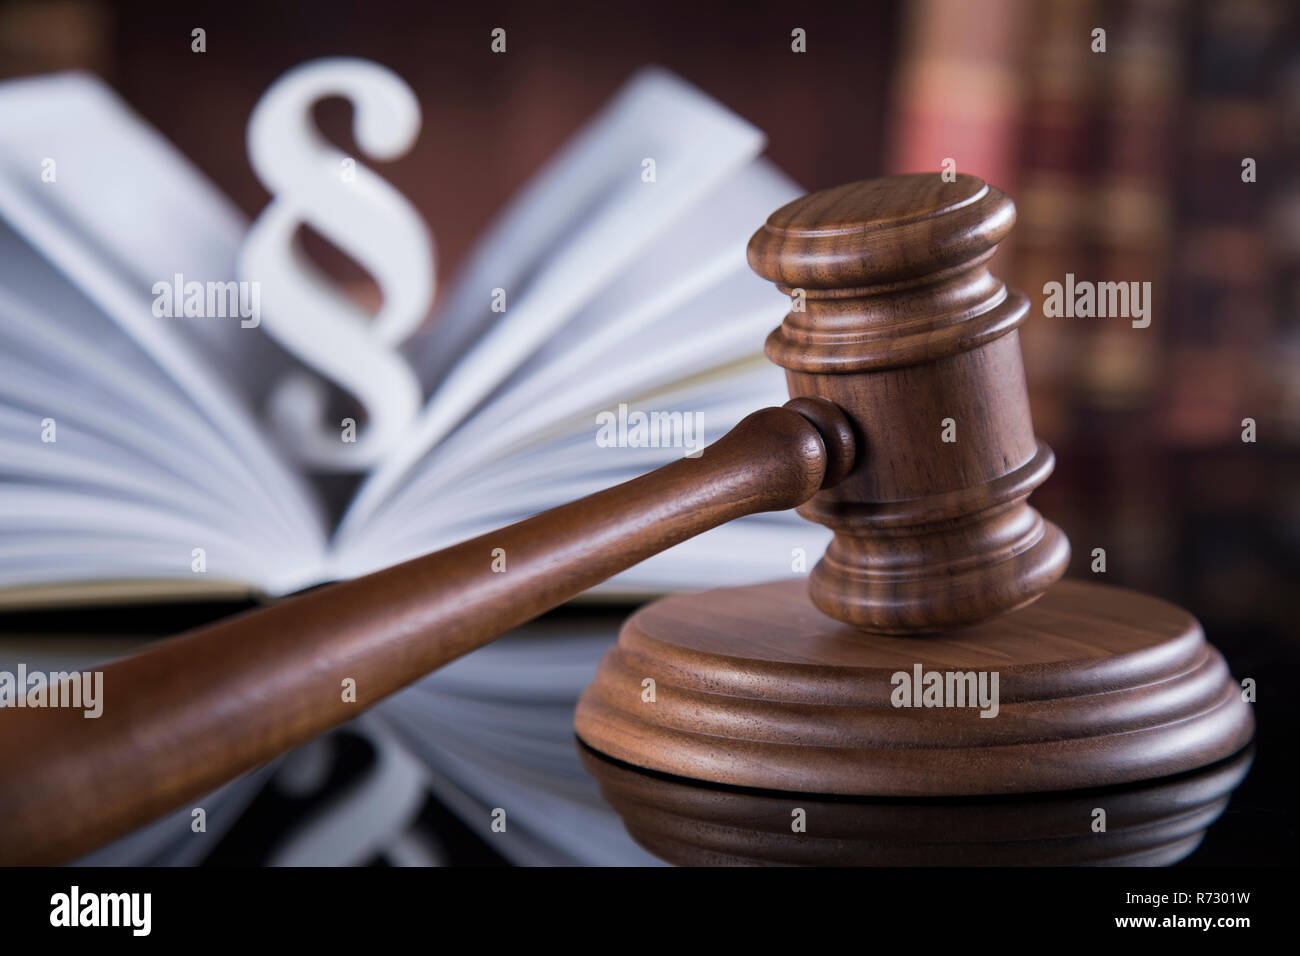 Buch, Gesetz Thema, Hammer des Richters, Holz- hammer Stockfotografie -  Alamy